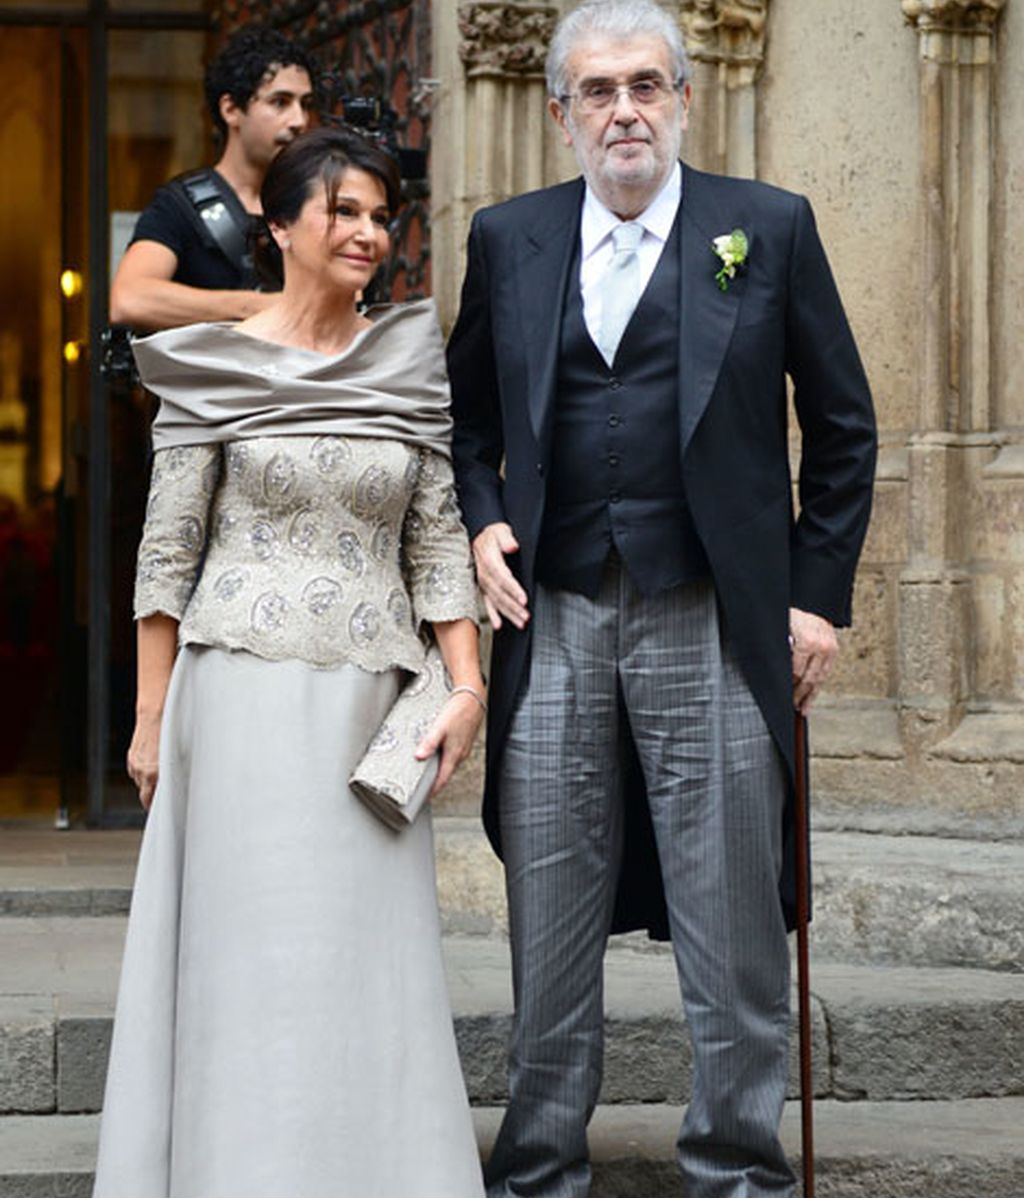 La boda de Pablo Lara y Anna Brufau reúne a políticos, empresarios, periodistas...